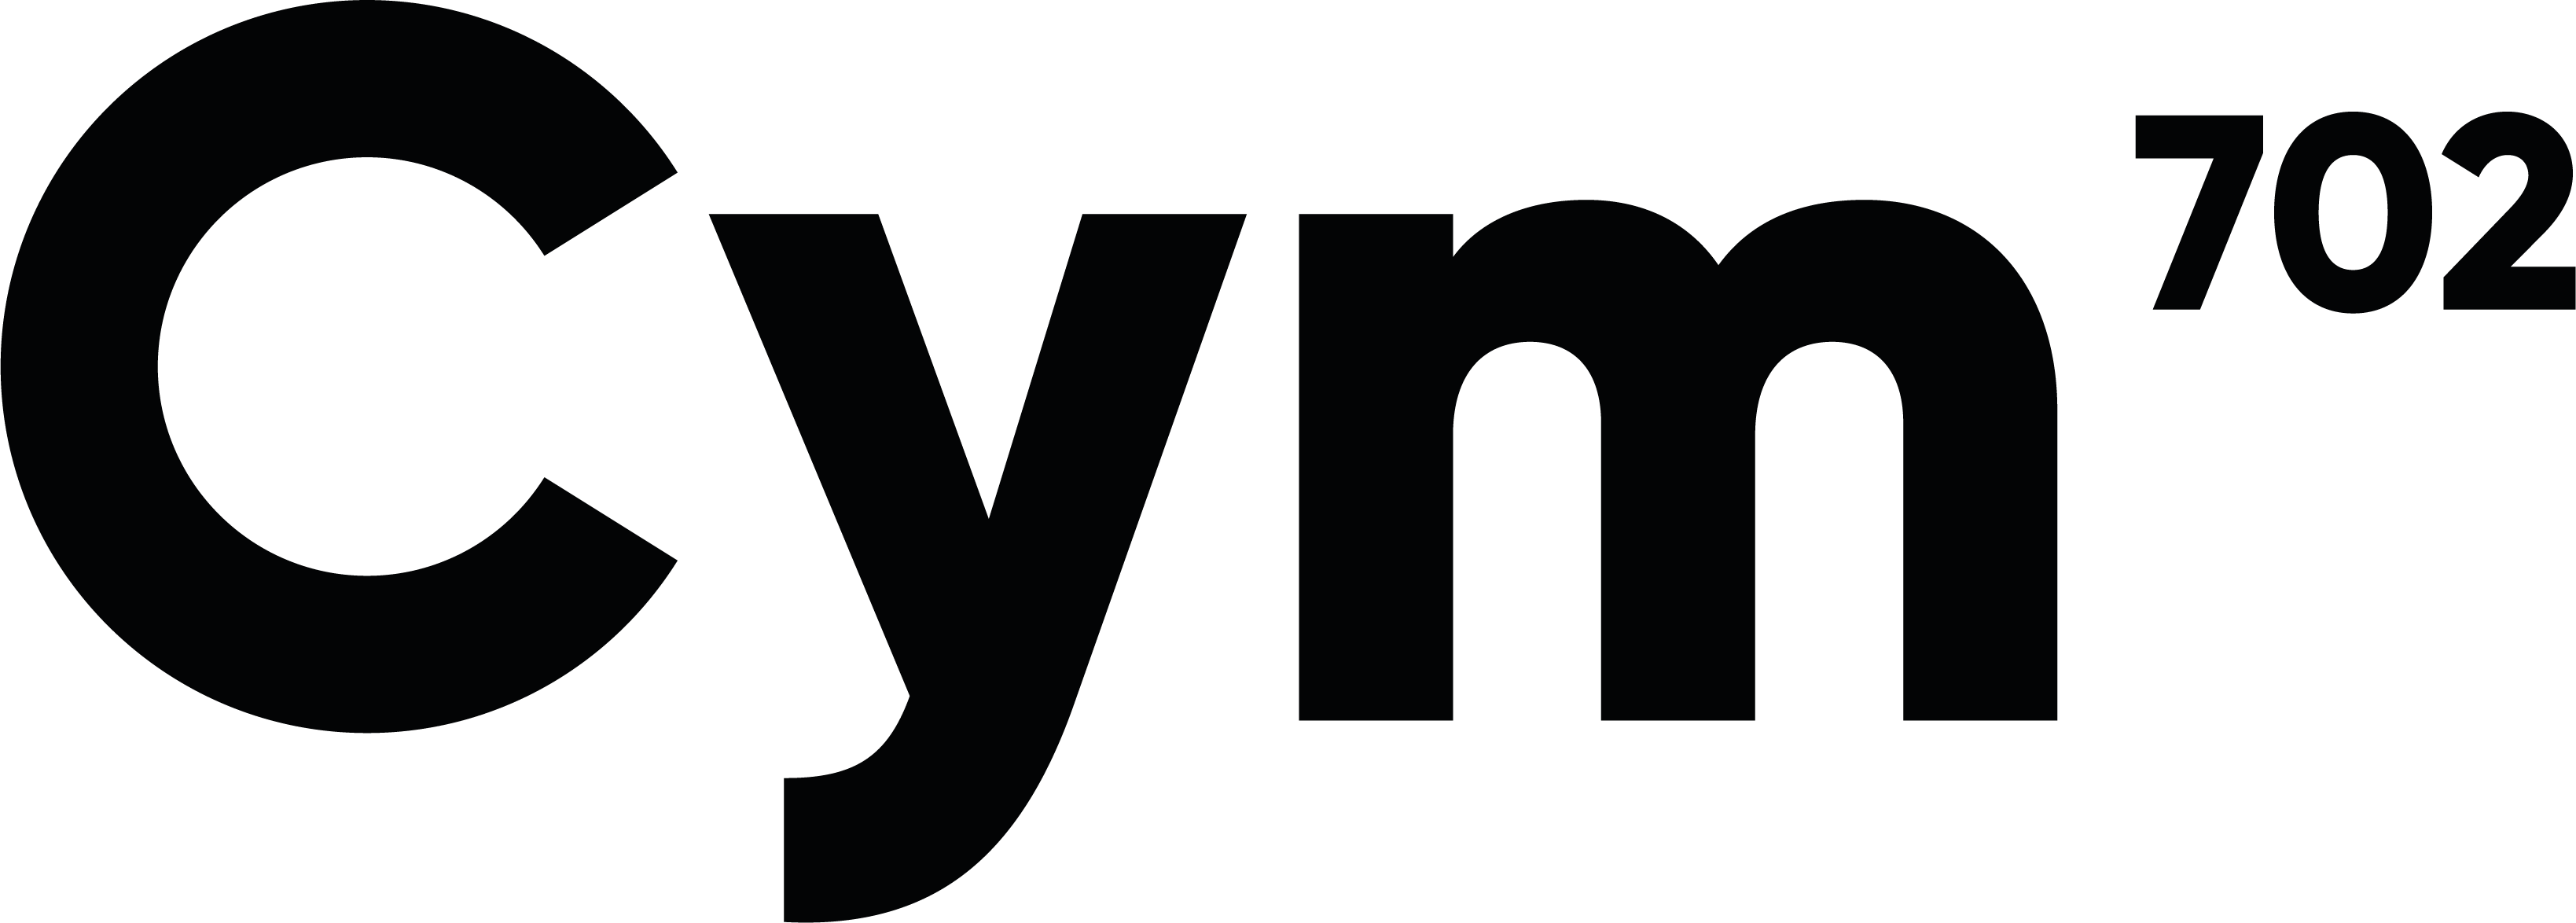 Cym702 Logo